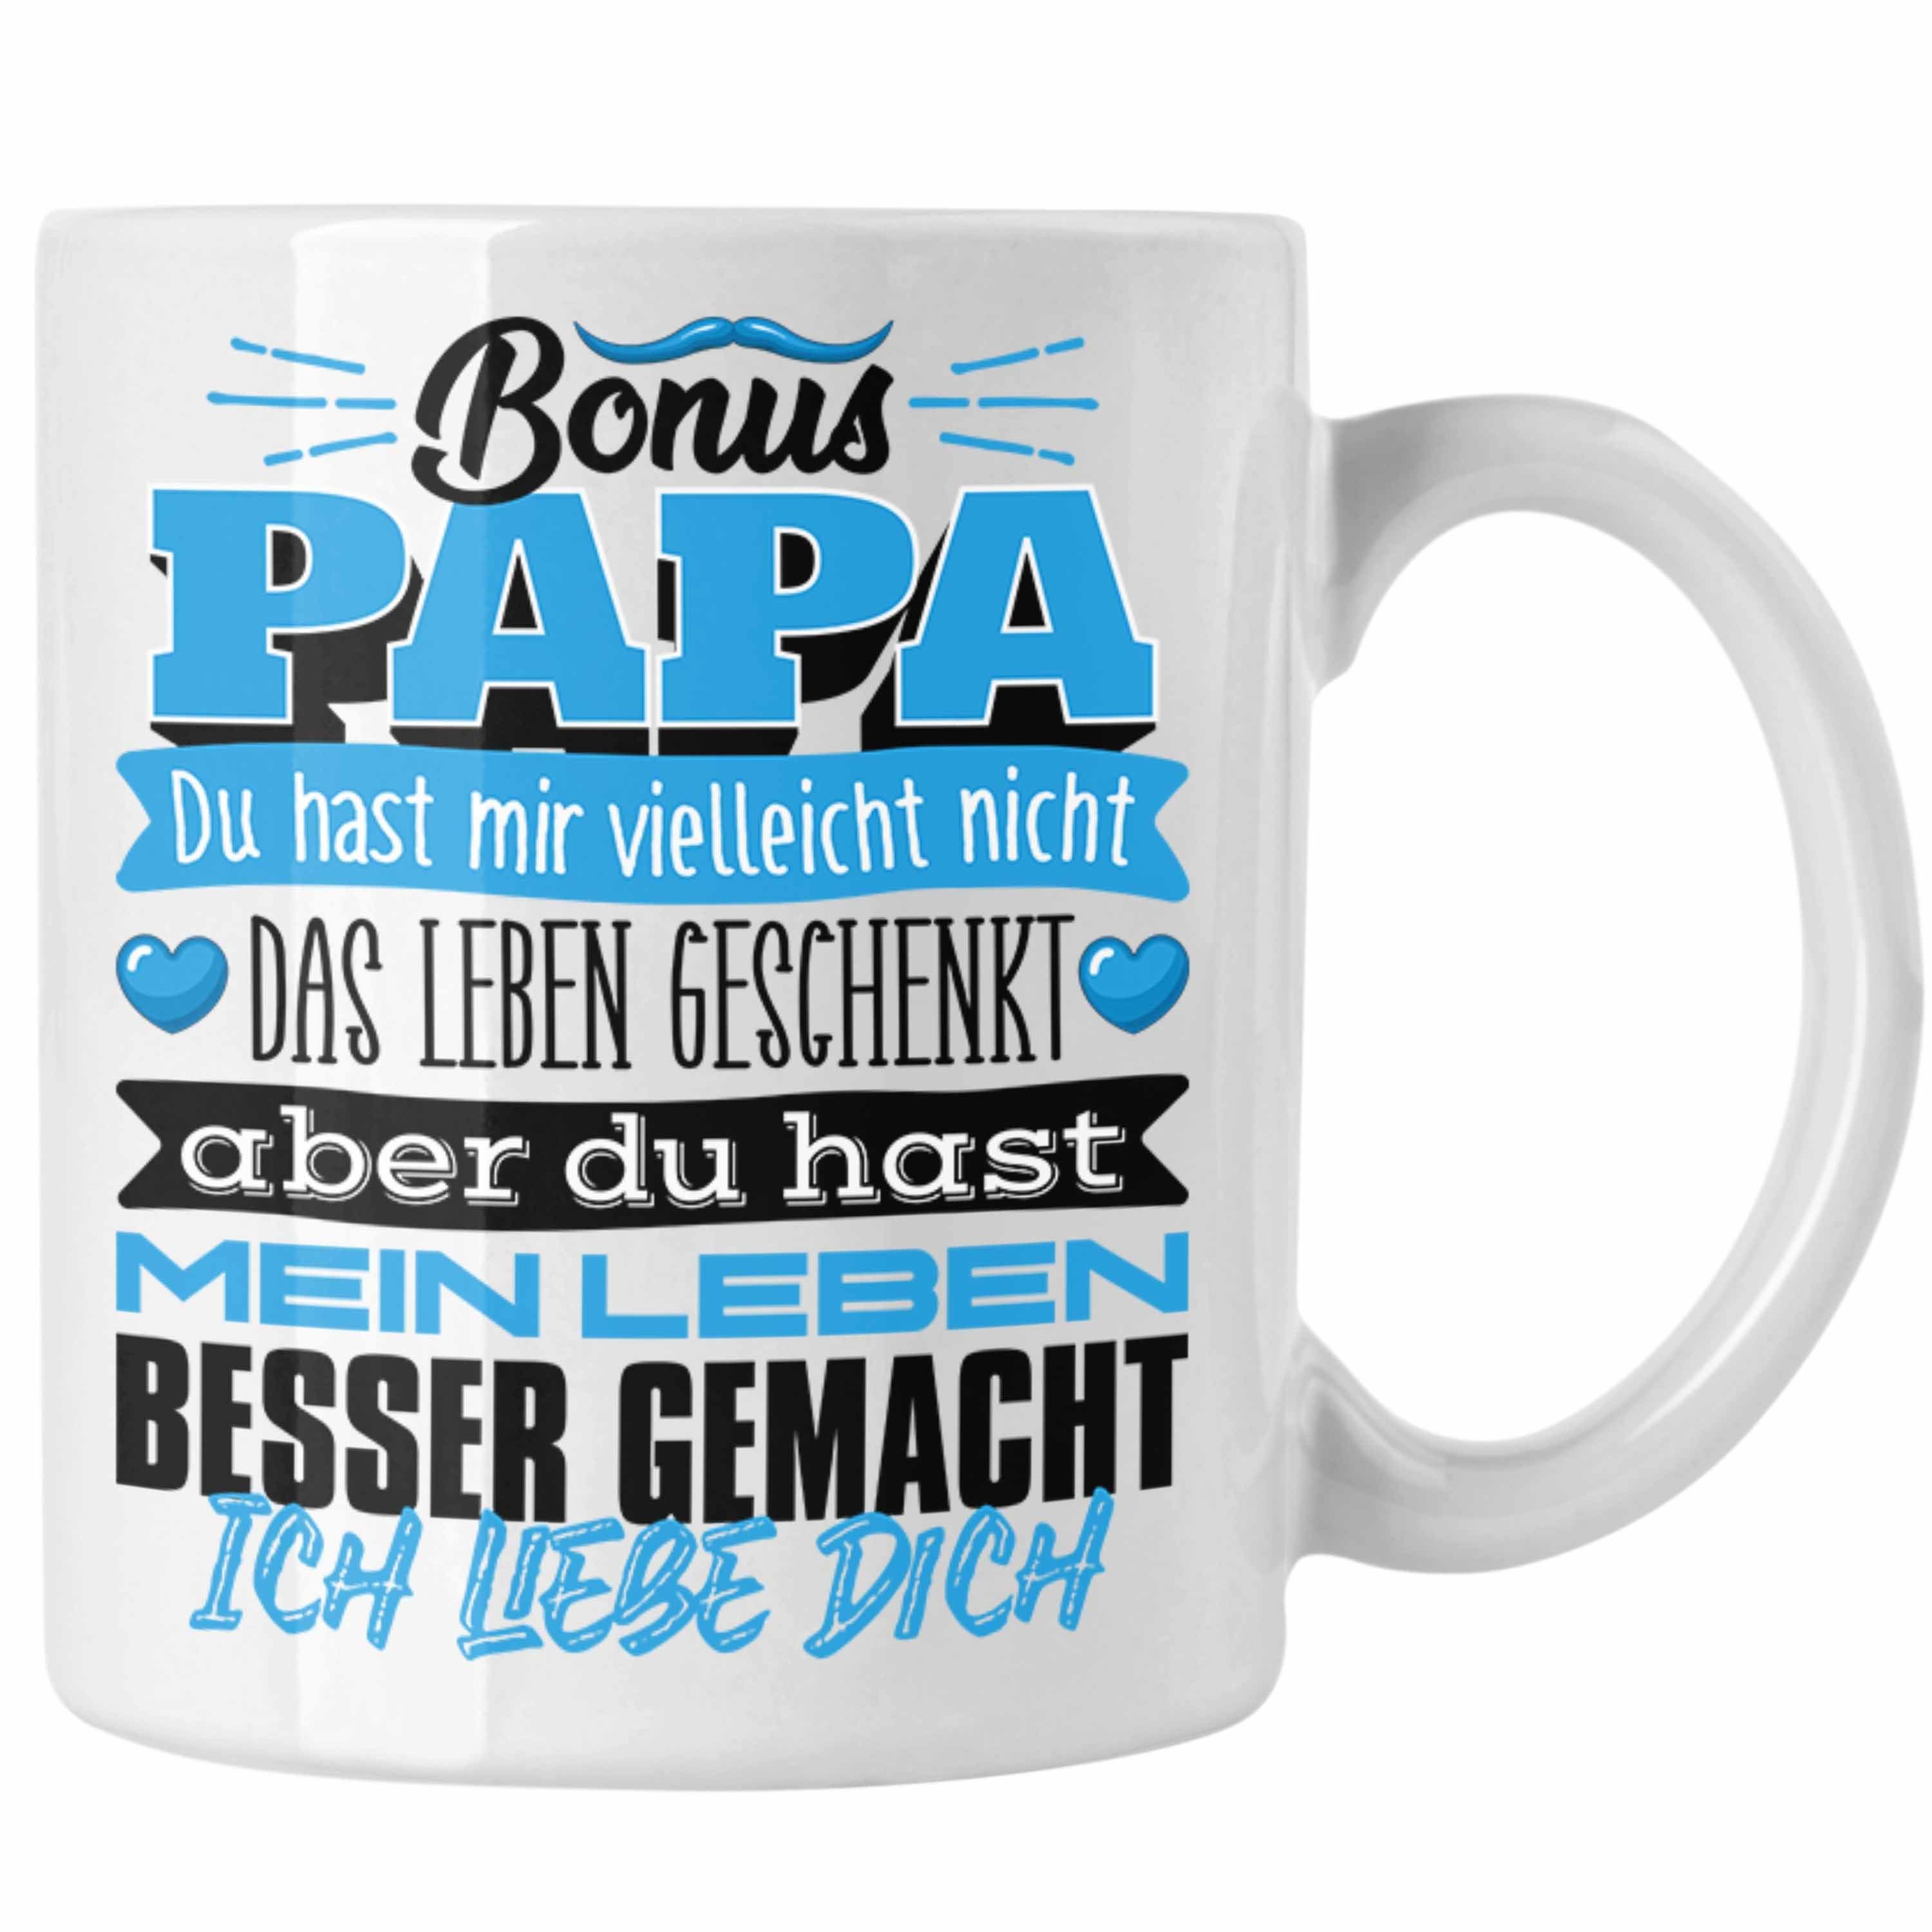 Gesch Trendation Das Leben Du Hast Bonus Mir Vielleicht Geschenk Weiss Papa Nicht Tasse Tasse